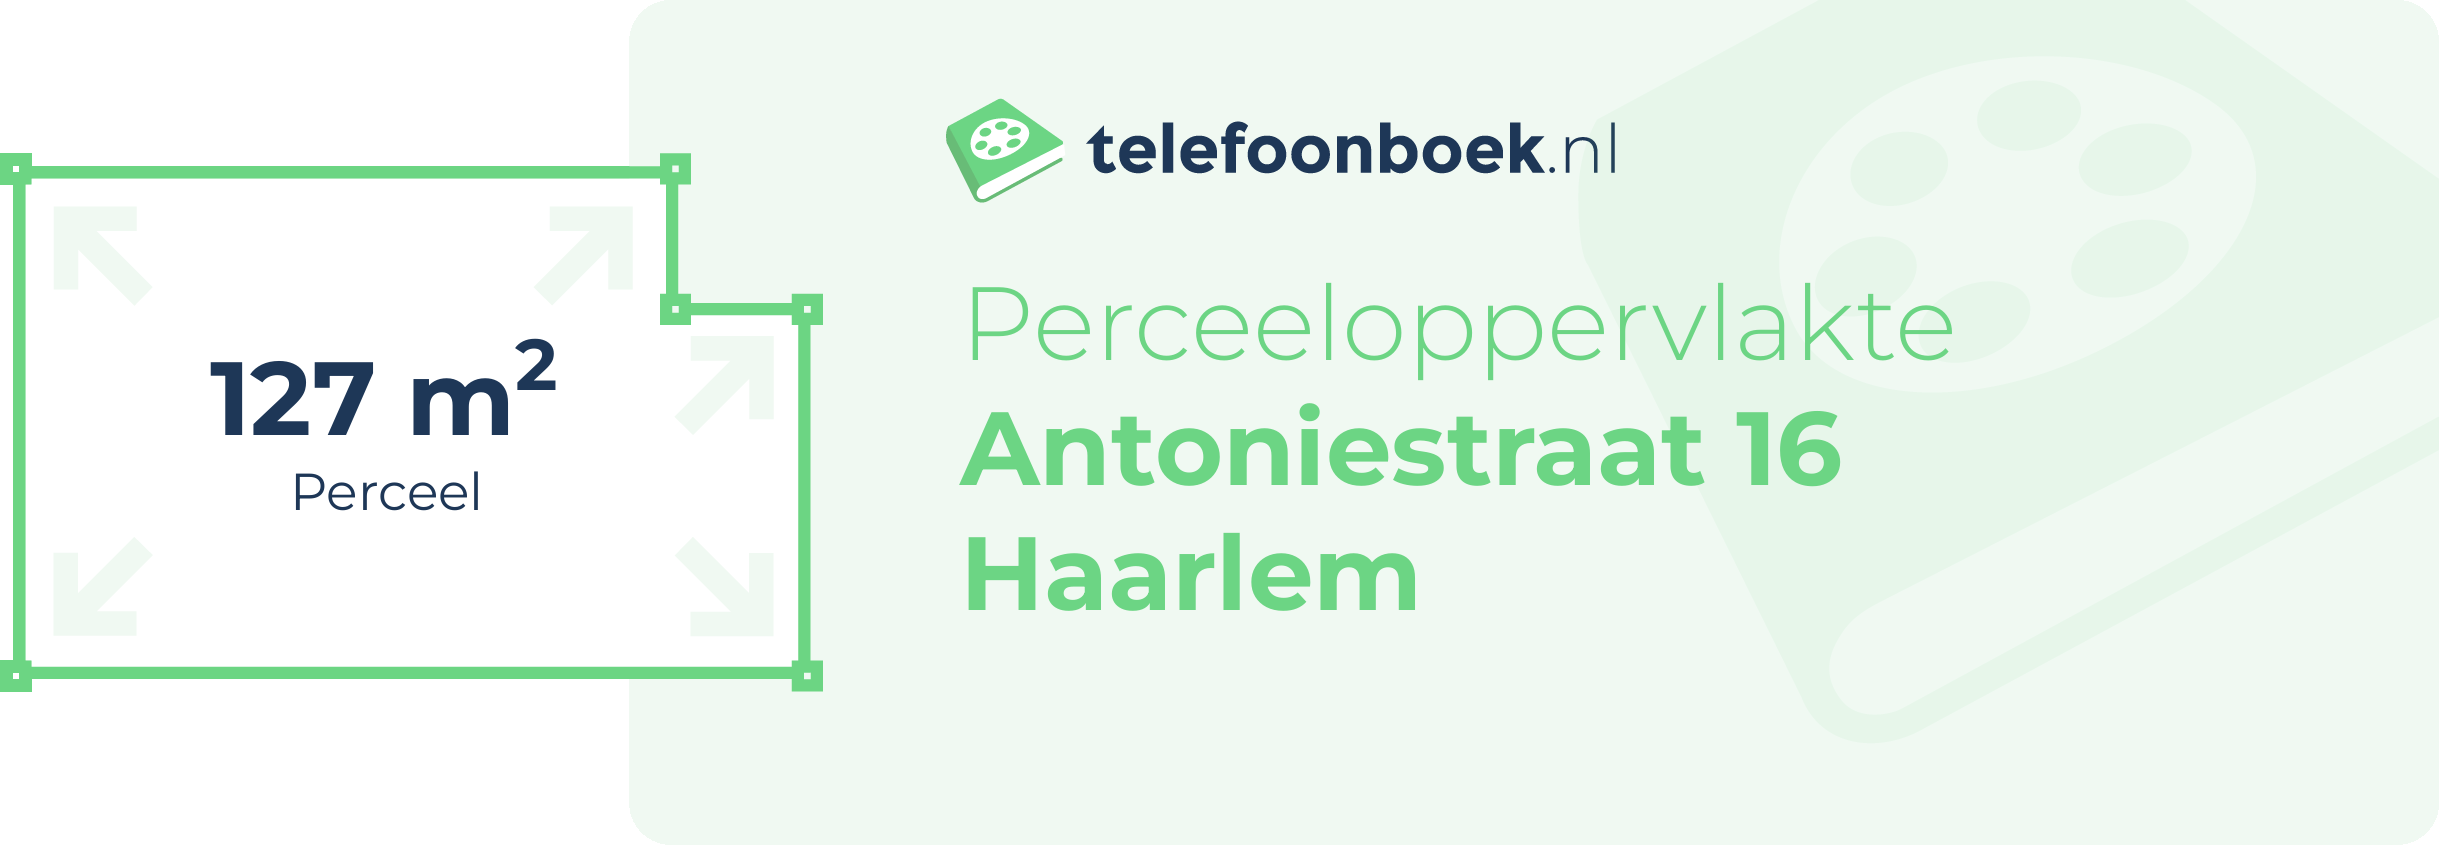 Perceeloppervlakte Antoniestraat 16 Haarlem